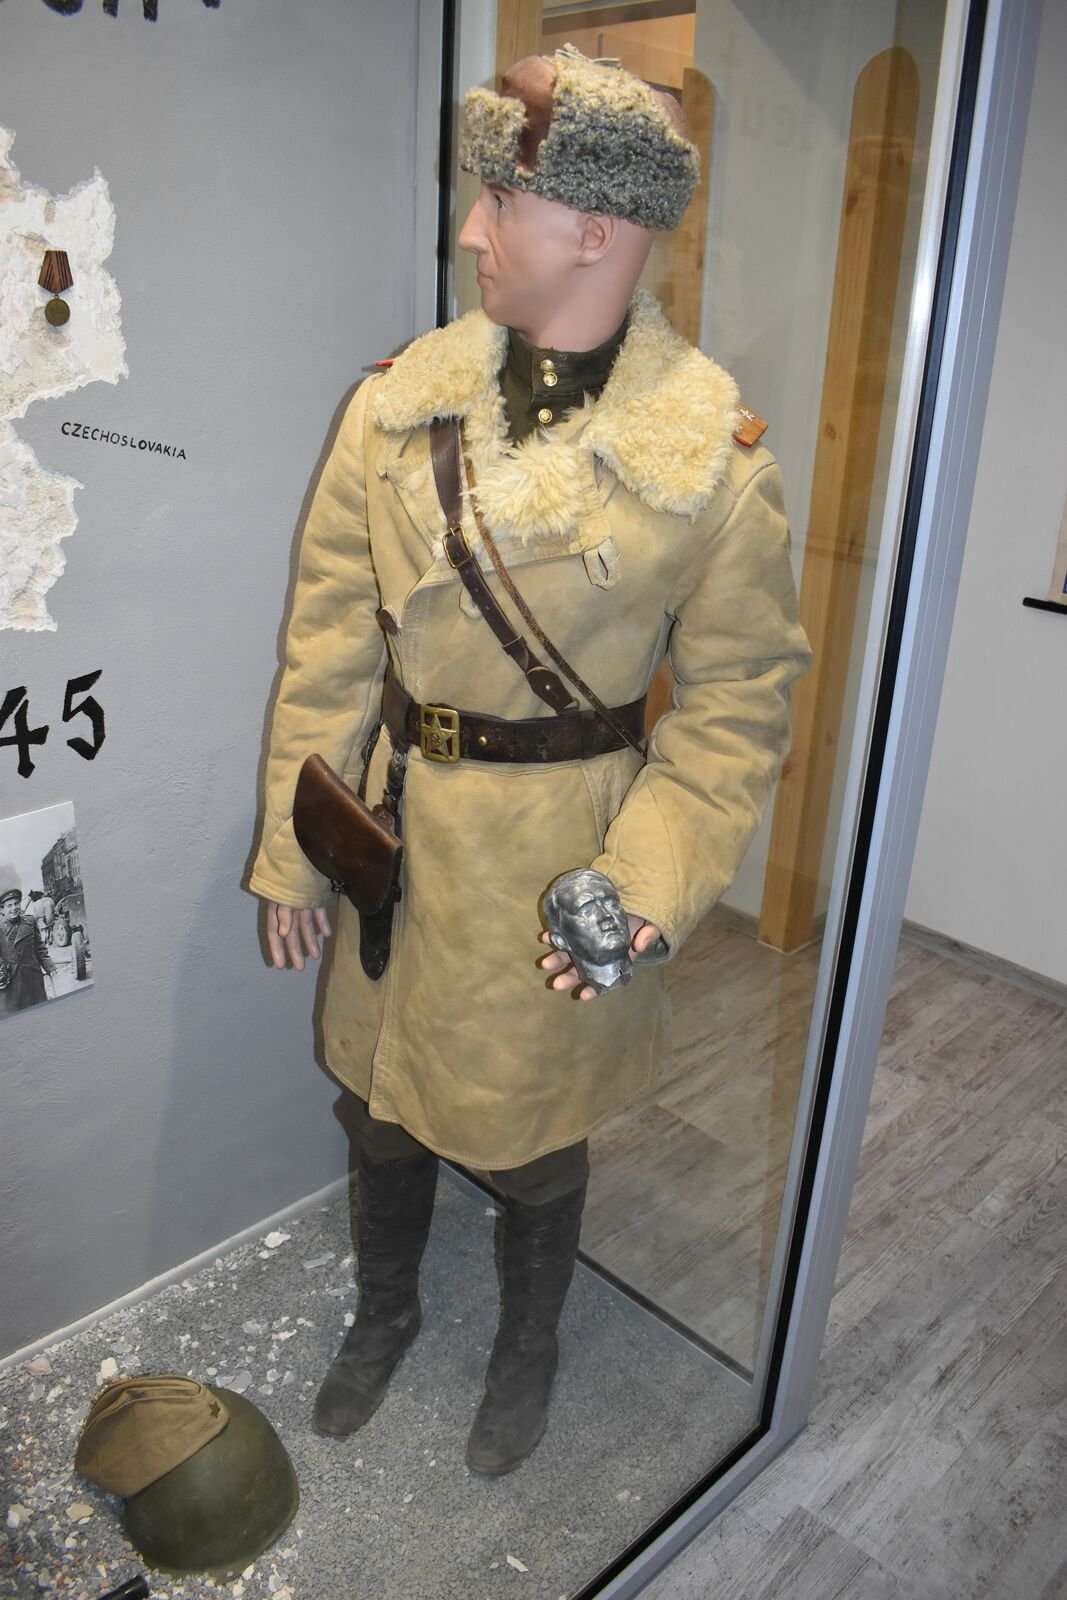 Sovětský voják, odnášející si mini bustu německého vůdce.